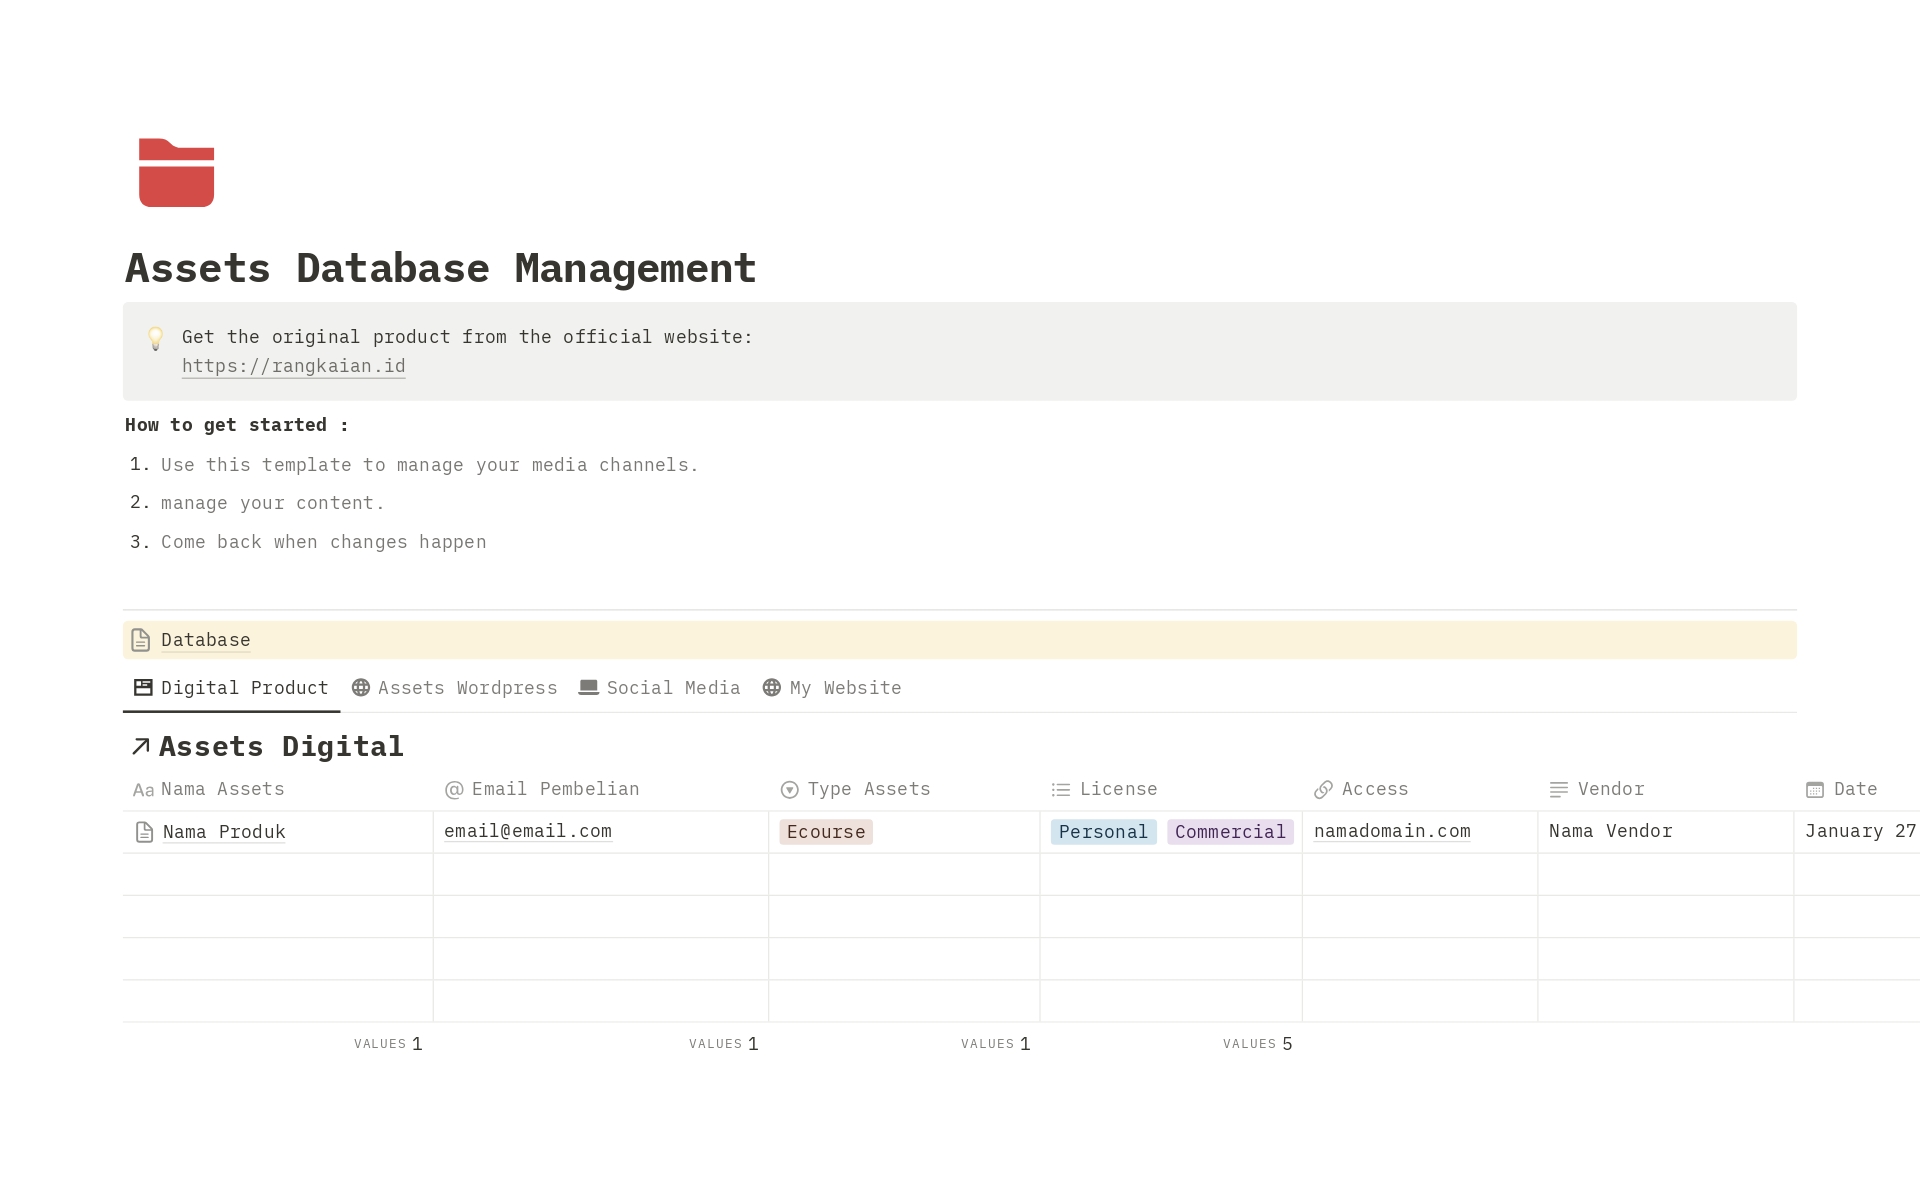 Vista previa de una plantilla para Assets Database Management